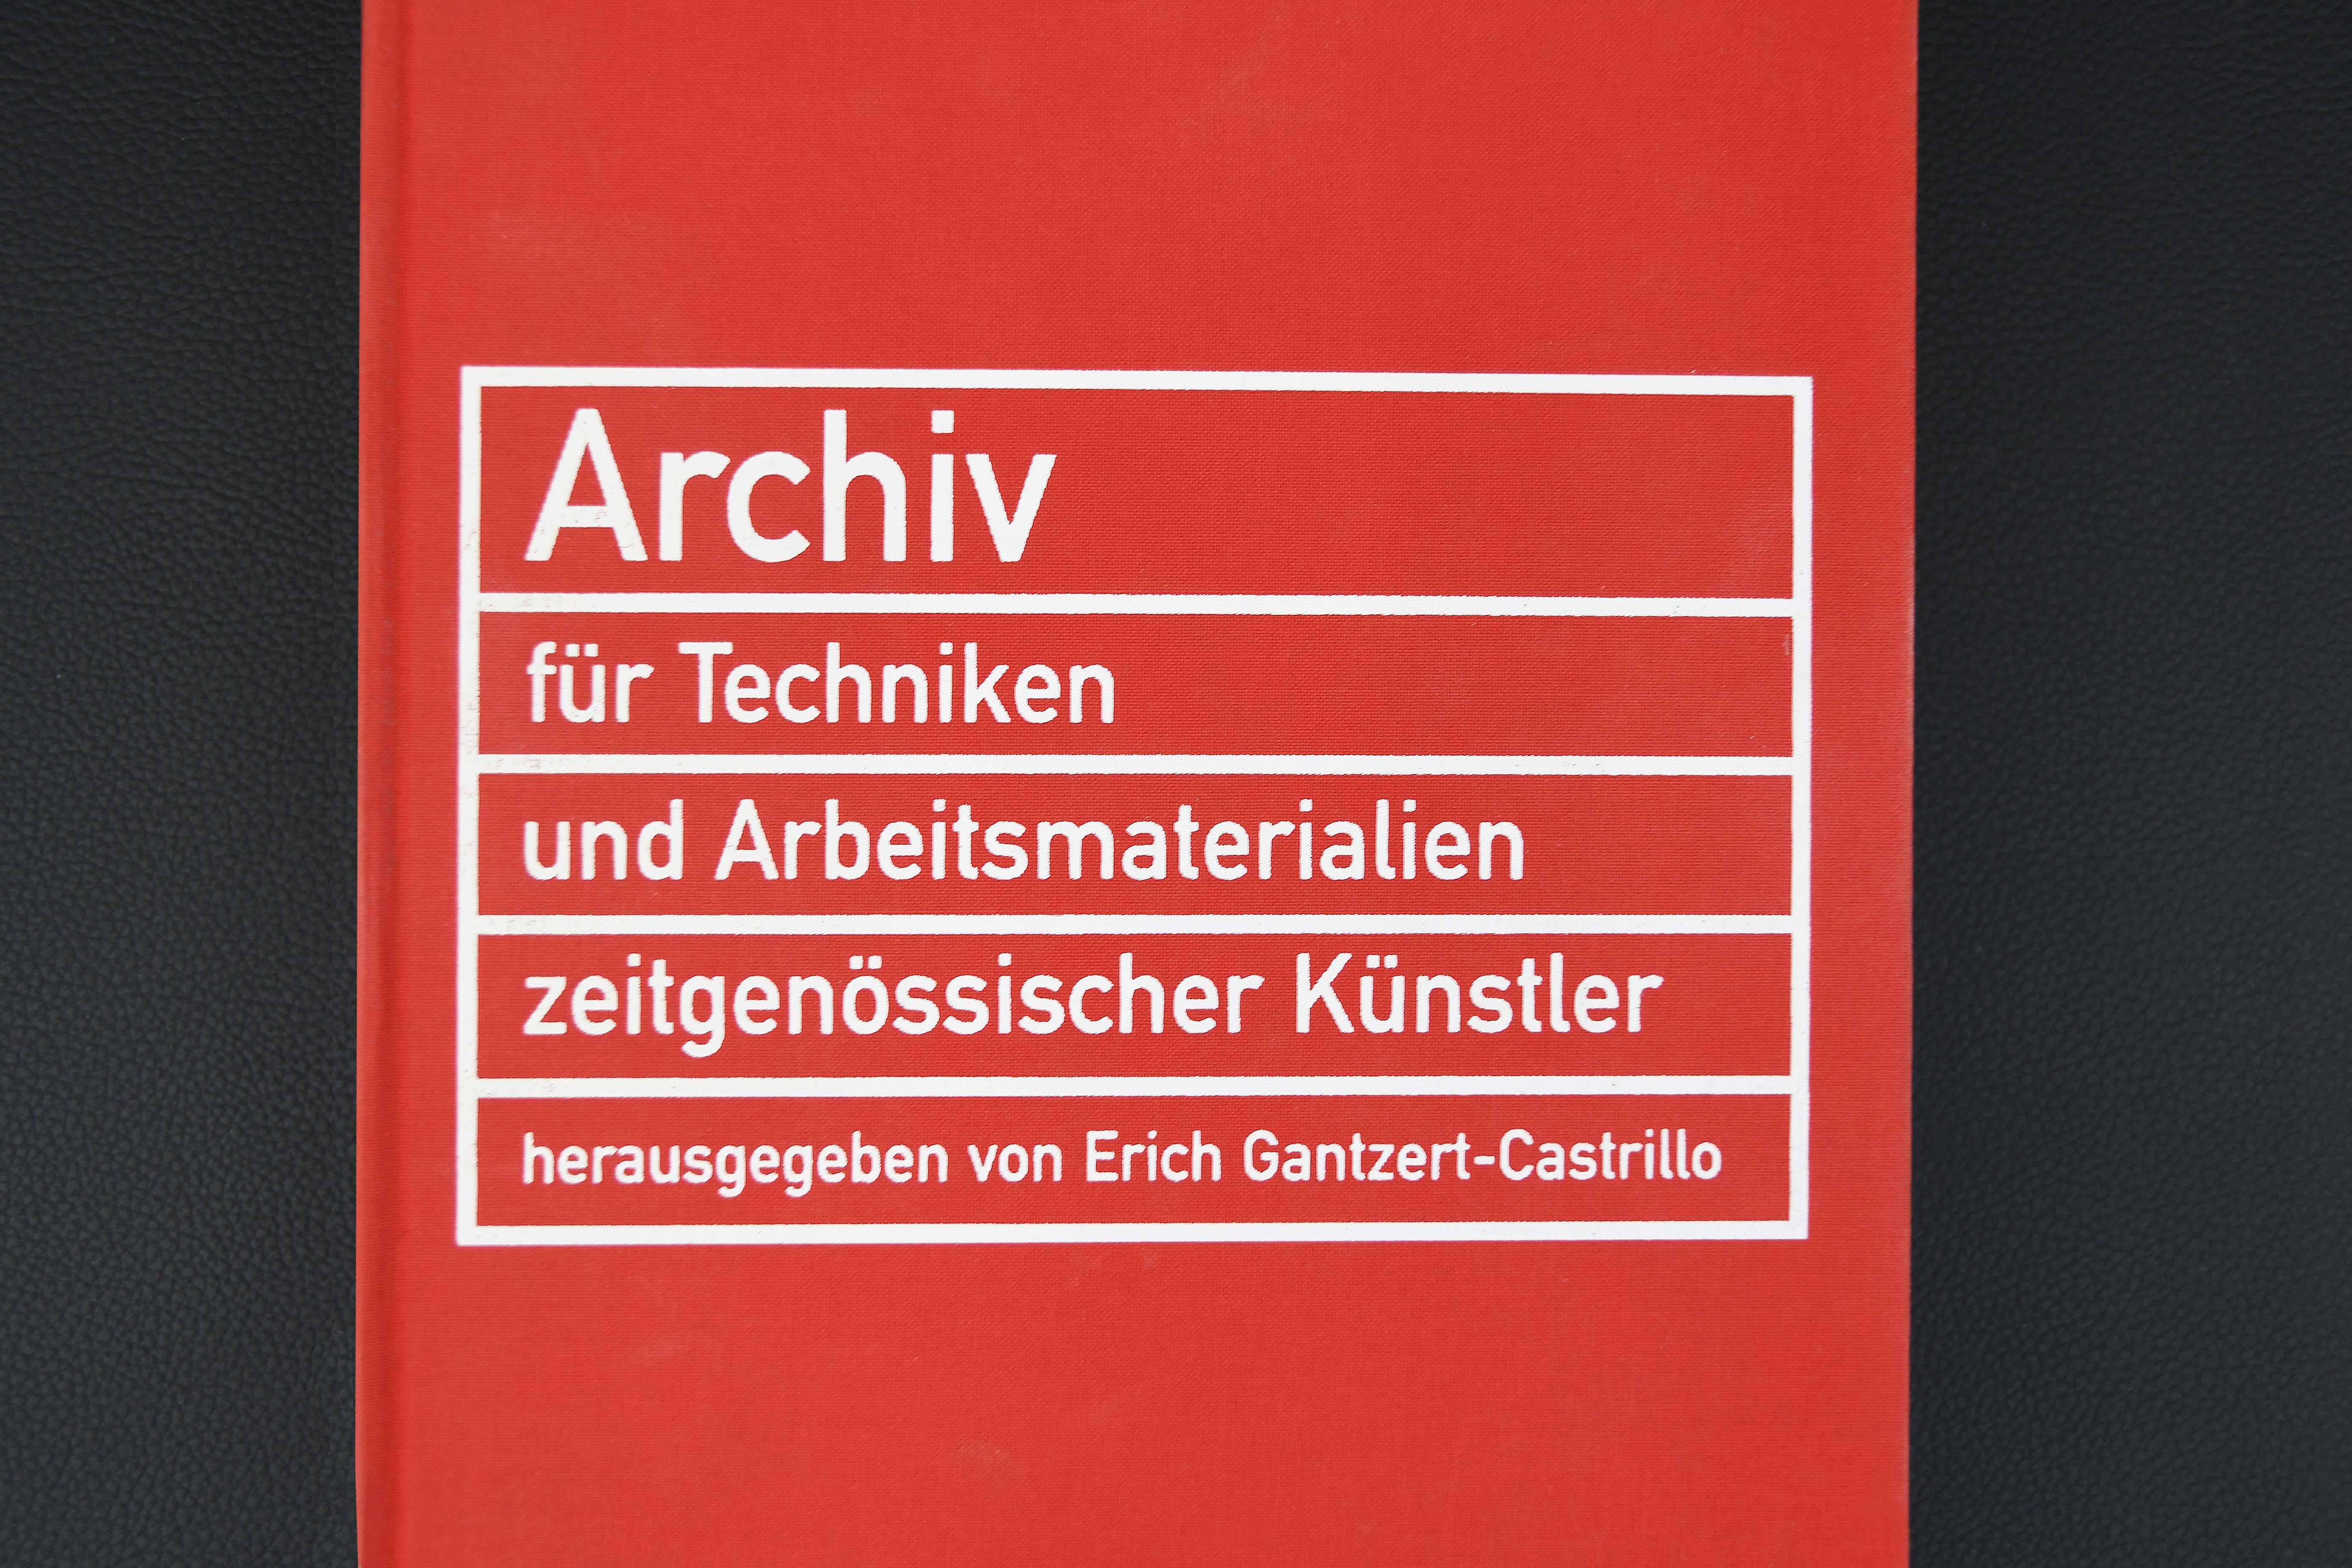 Bild der Buchklappe "Archiv für Techniken und Arbeitsmaterialien zeitgenössischer Künstler"